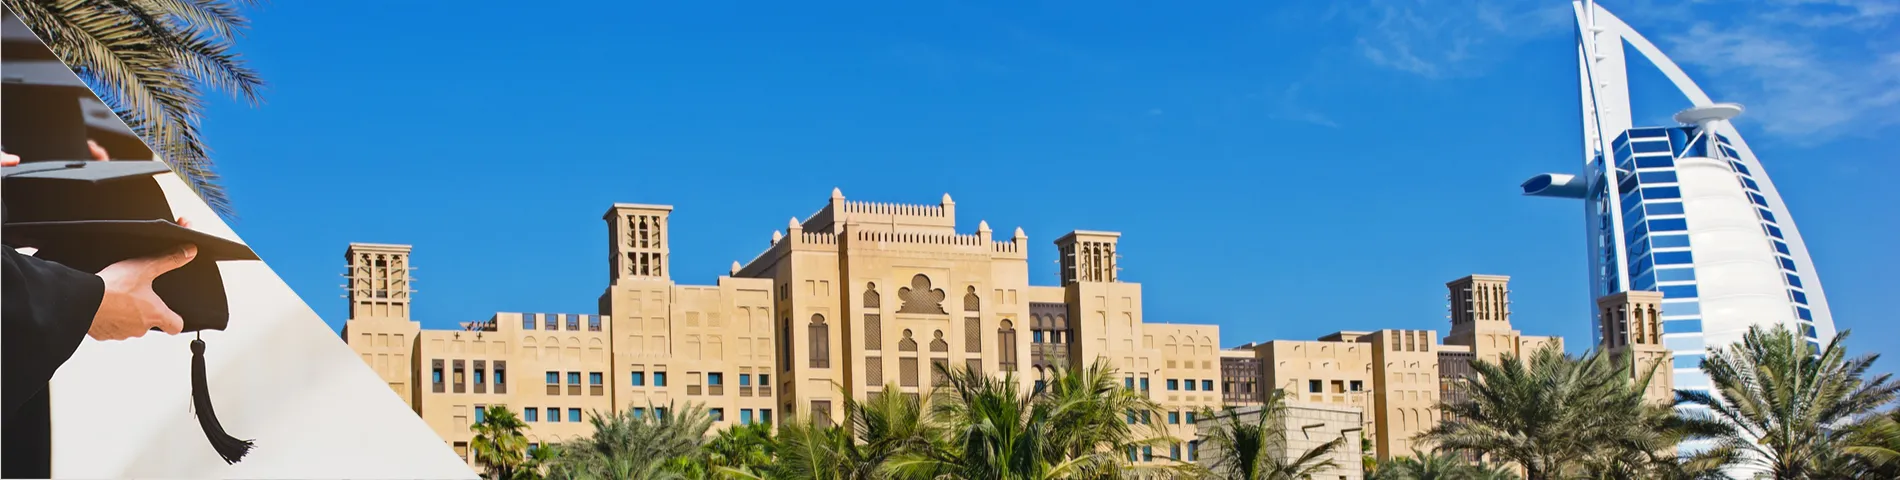 الإمارات العربية المتحدة - الدورات الجامعية